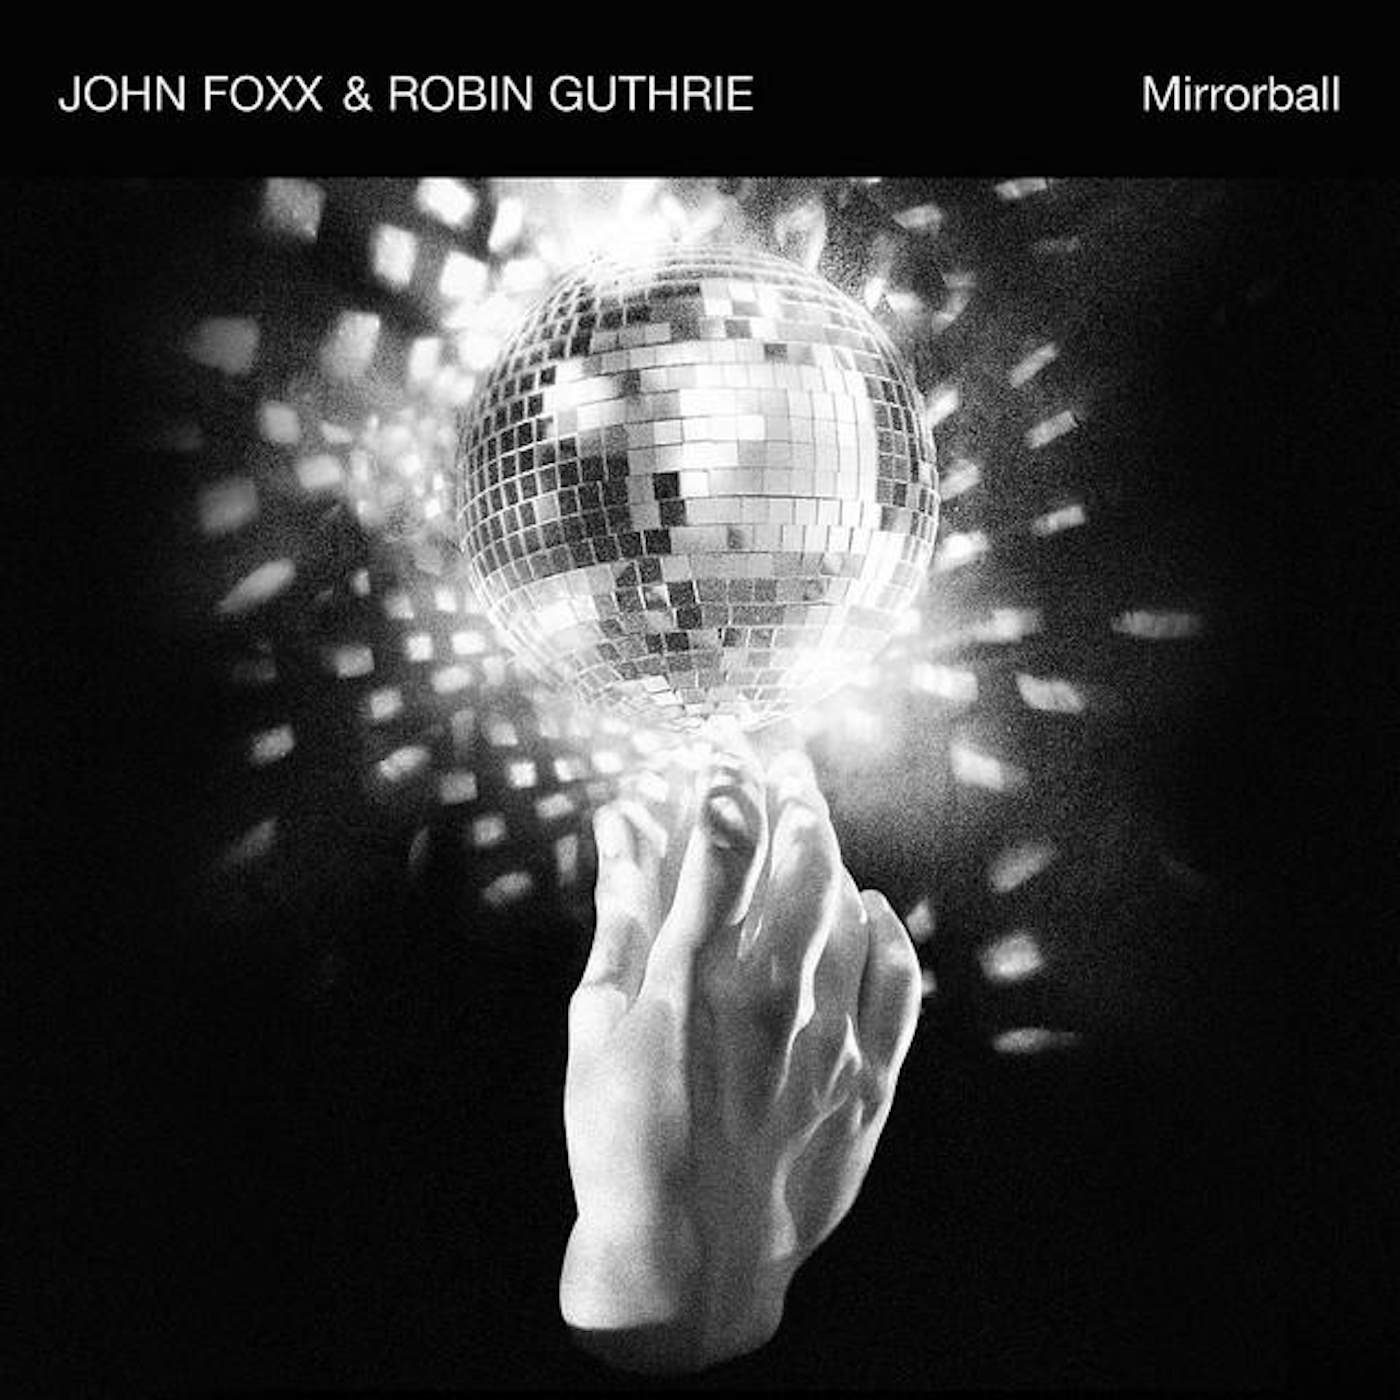 John Foxx and Robin Guthrie